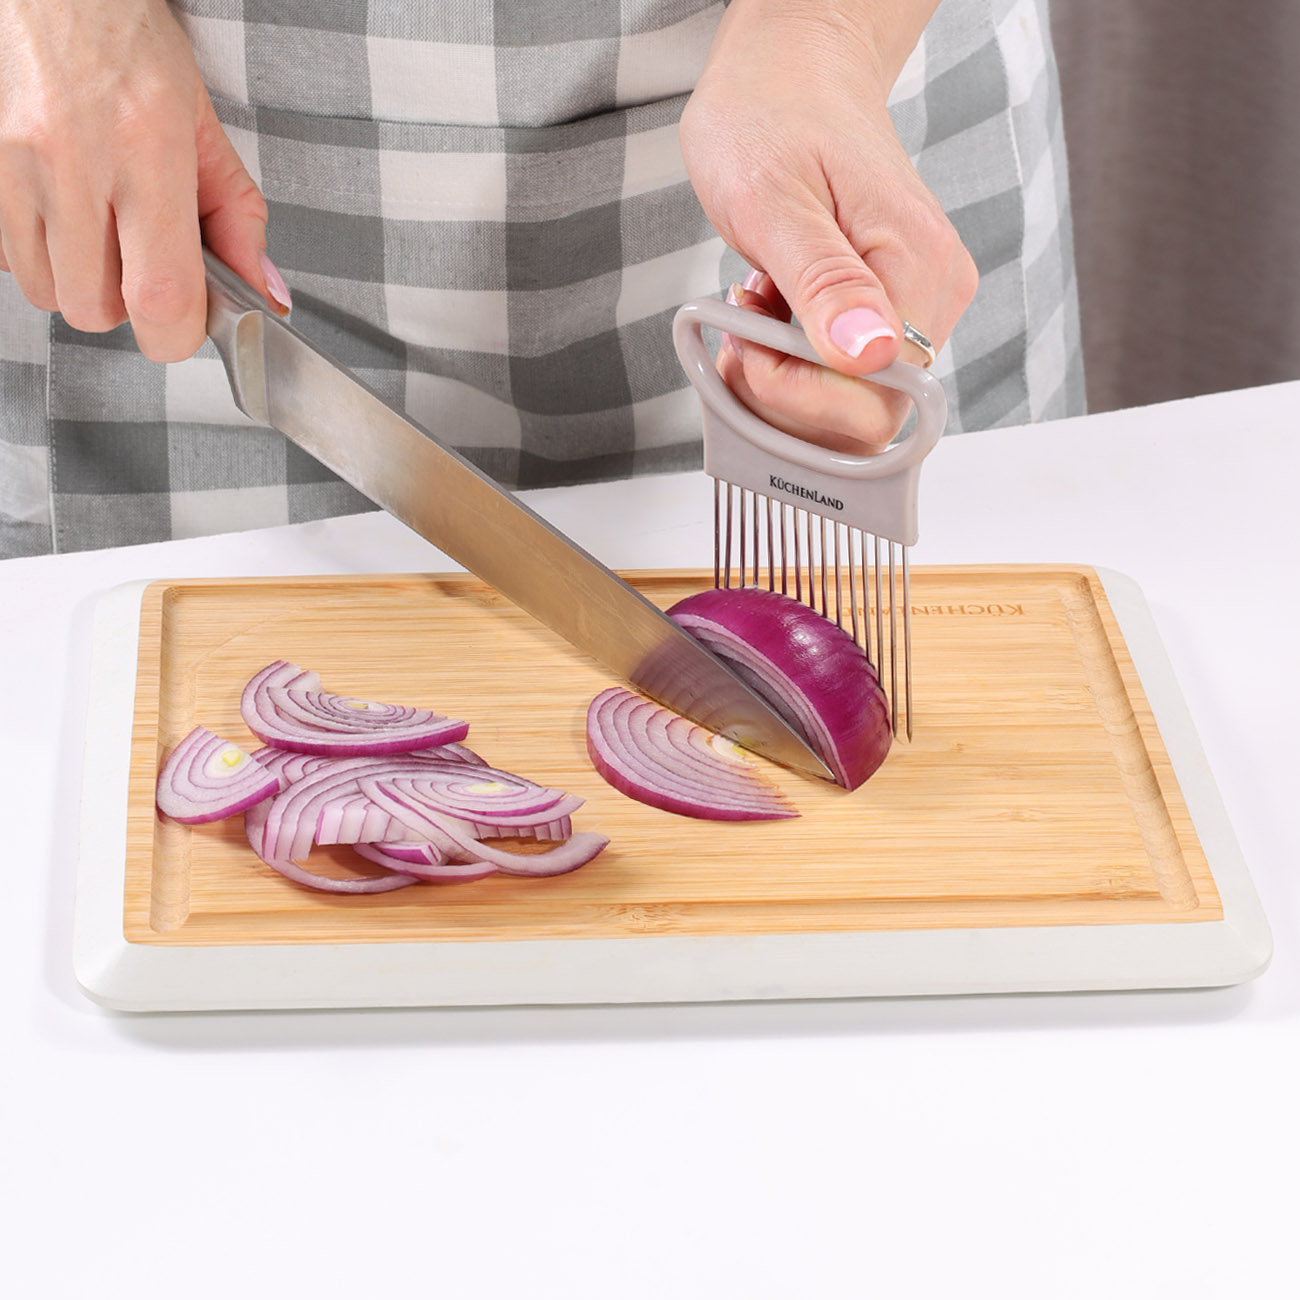 Onion slicer holder, 11x9 cm, plastic / steel, Beige, Soft Kitchen изображение № 3